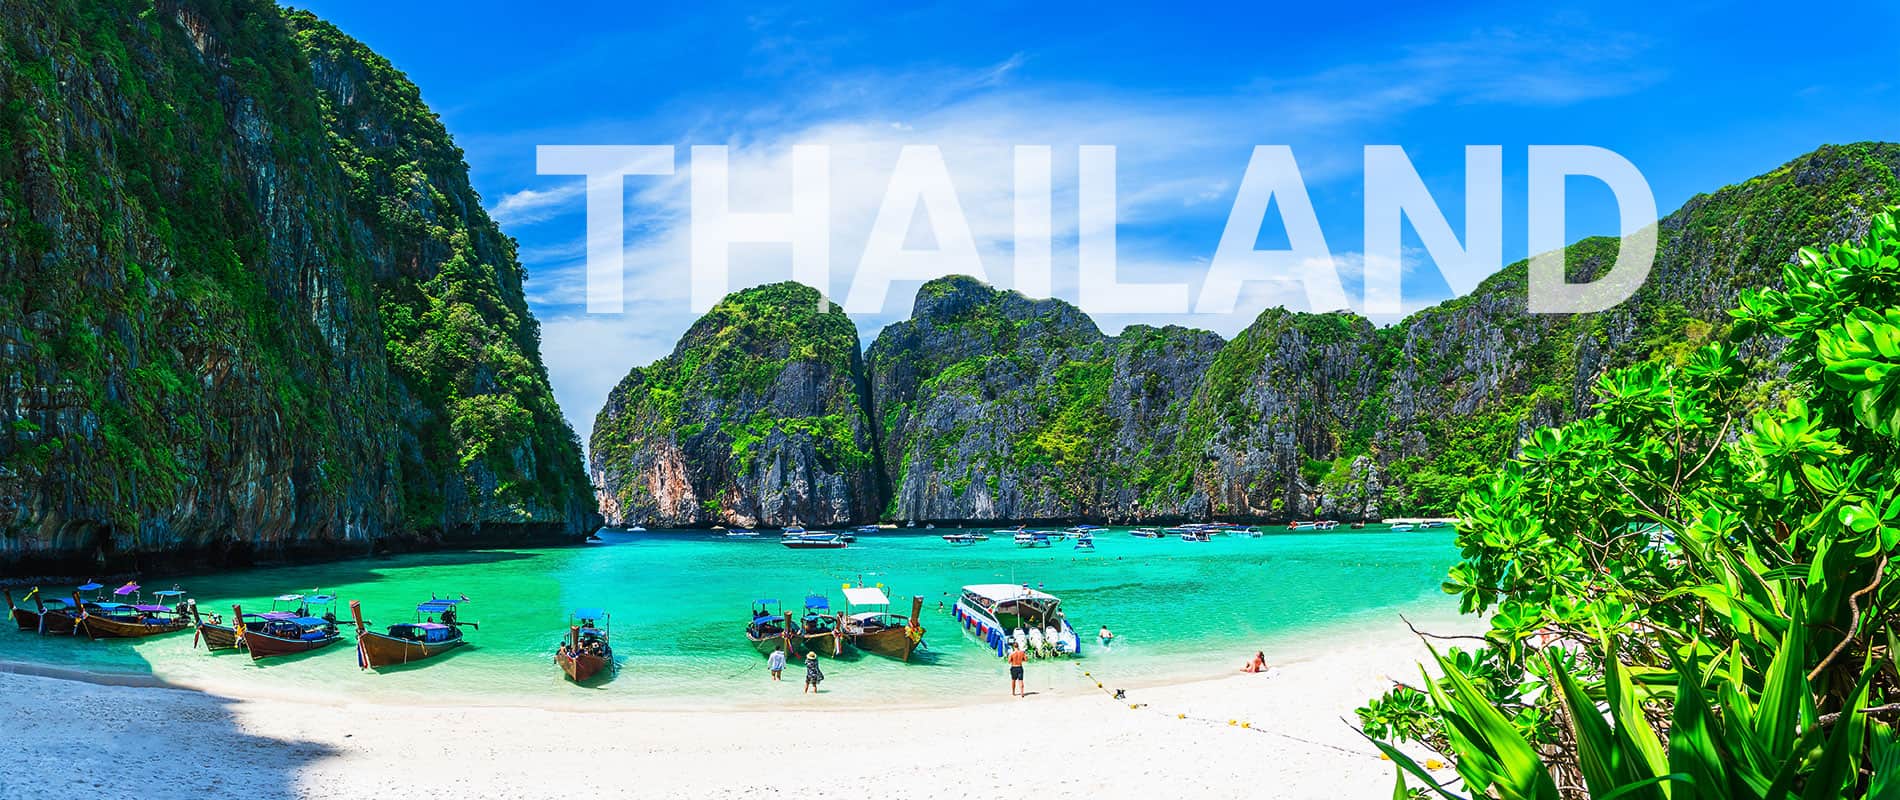 טיול לתאילנד עם טקסט בכותרת באנגלית THAILAND